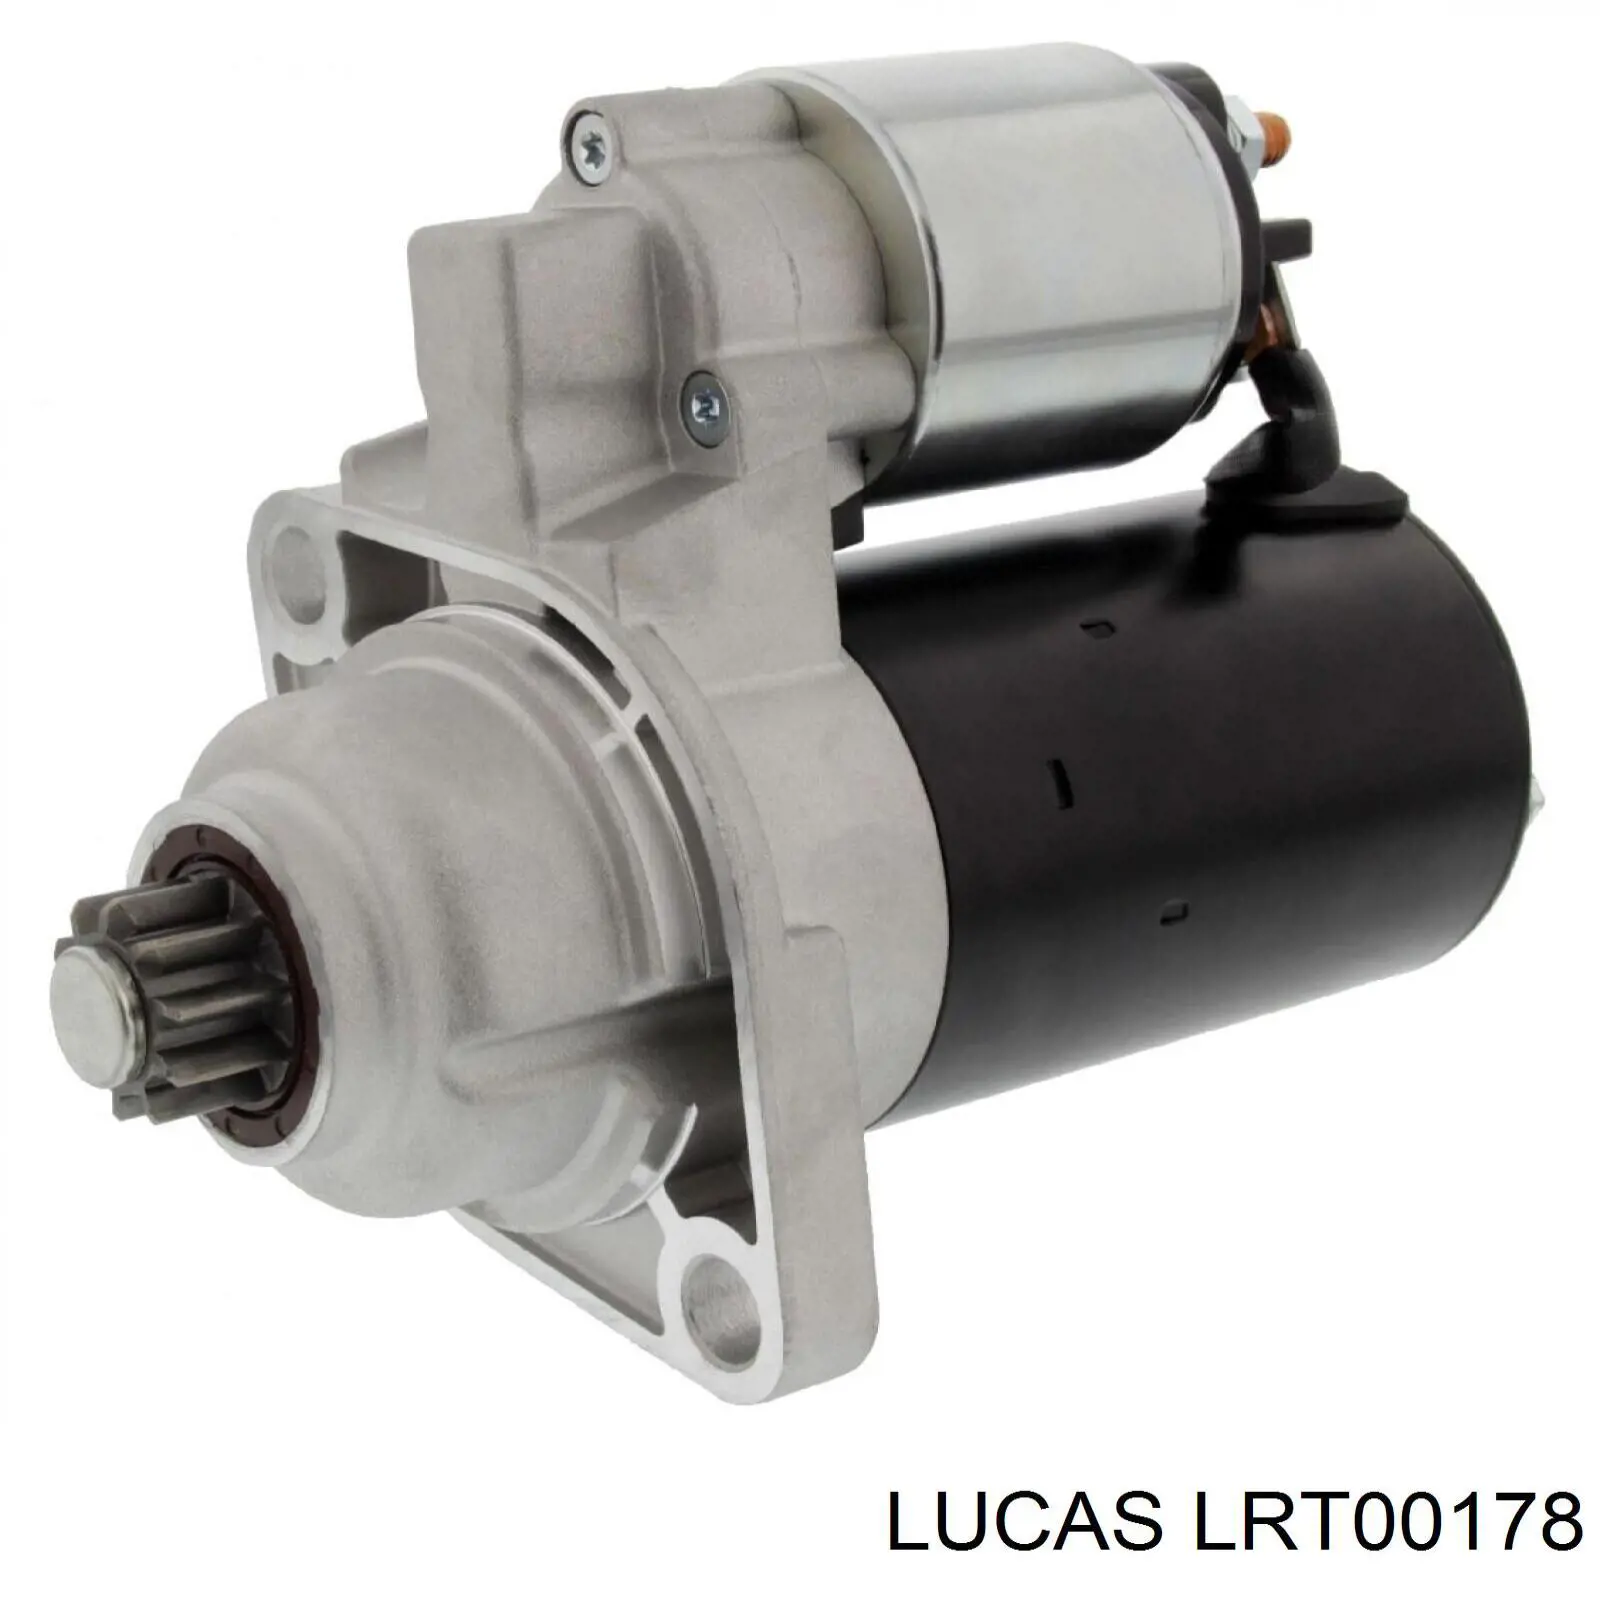 LRT00178 Lucas motor de arranque